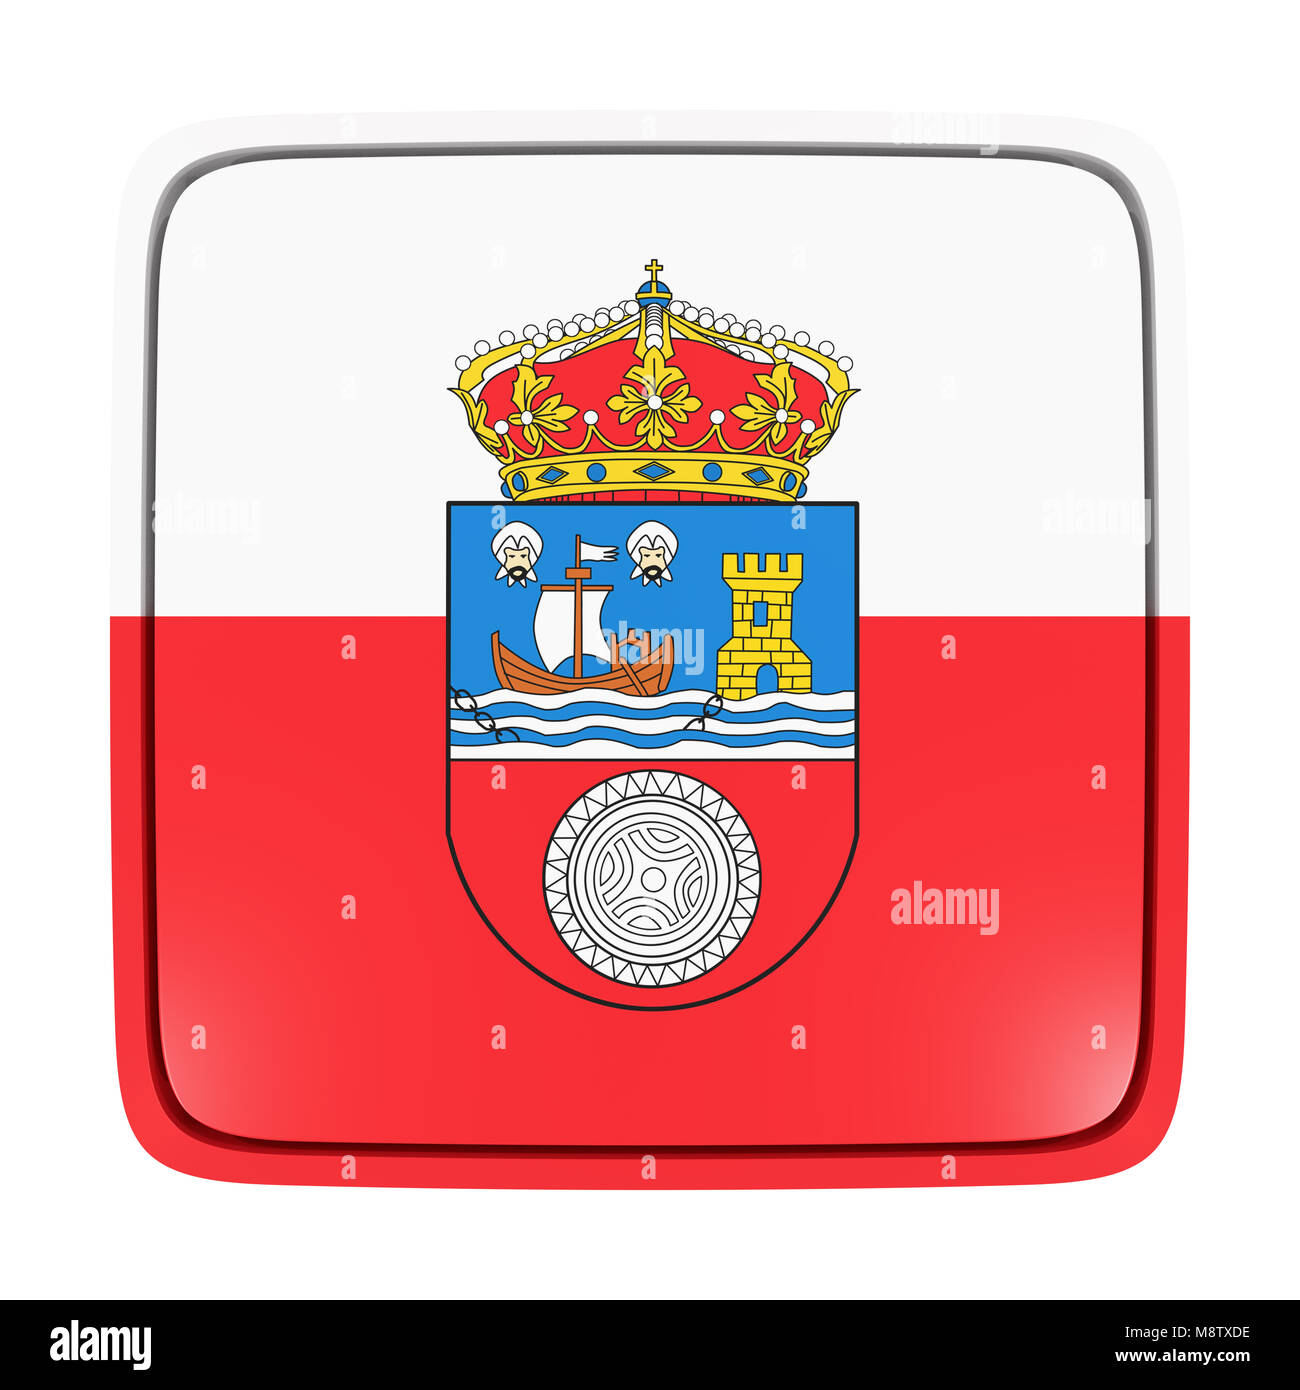 Le rendu 3D d'une icône en forme de drapeau de la communauté espagnole de Cantabrie. Isolé sur fond blanc. Banque D'Images